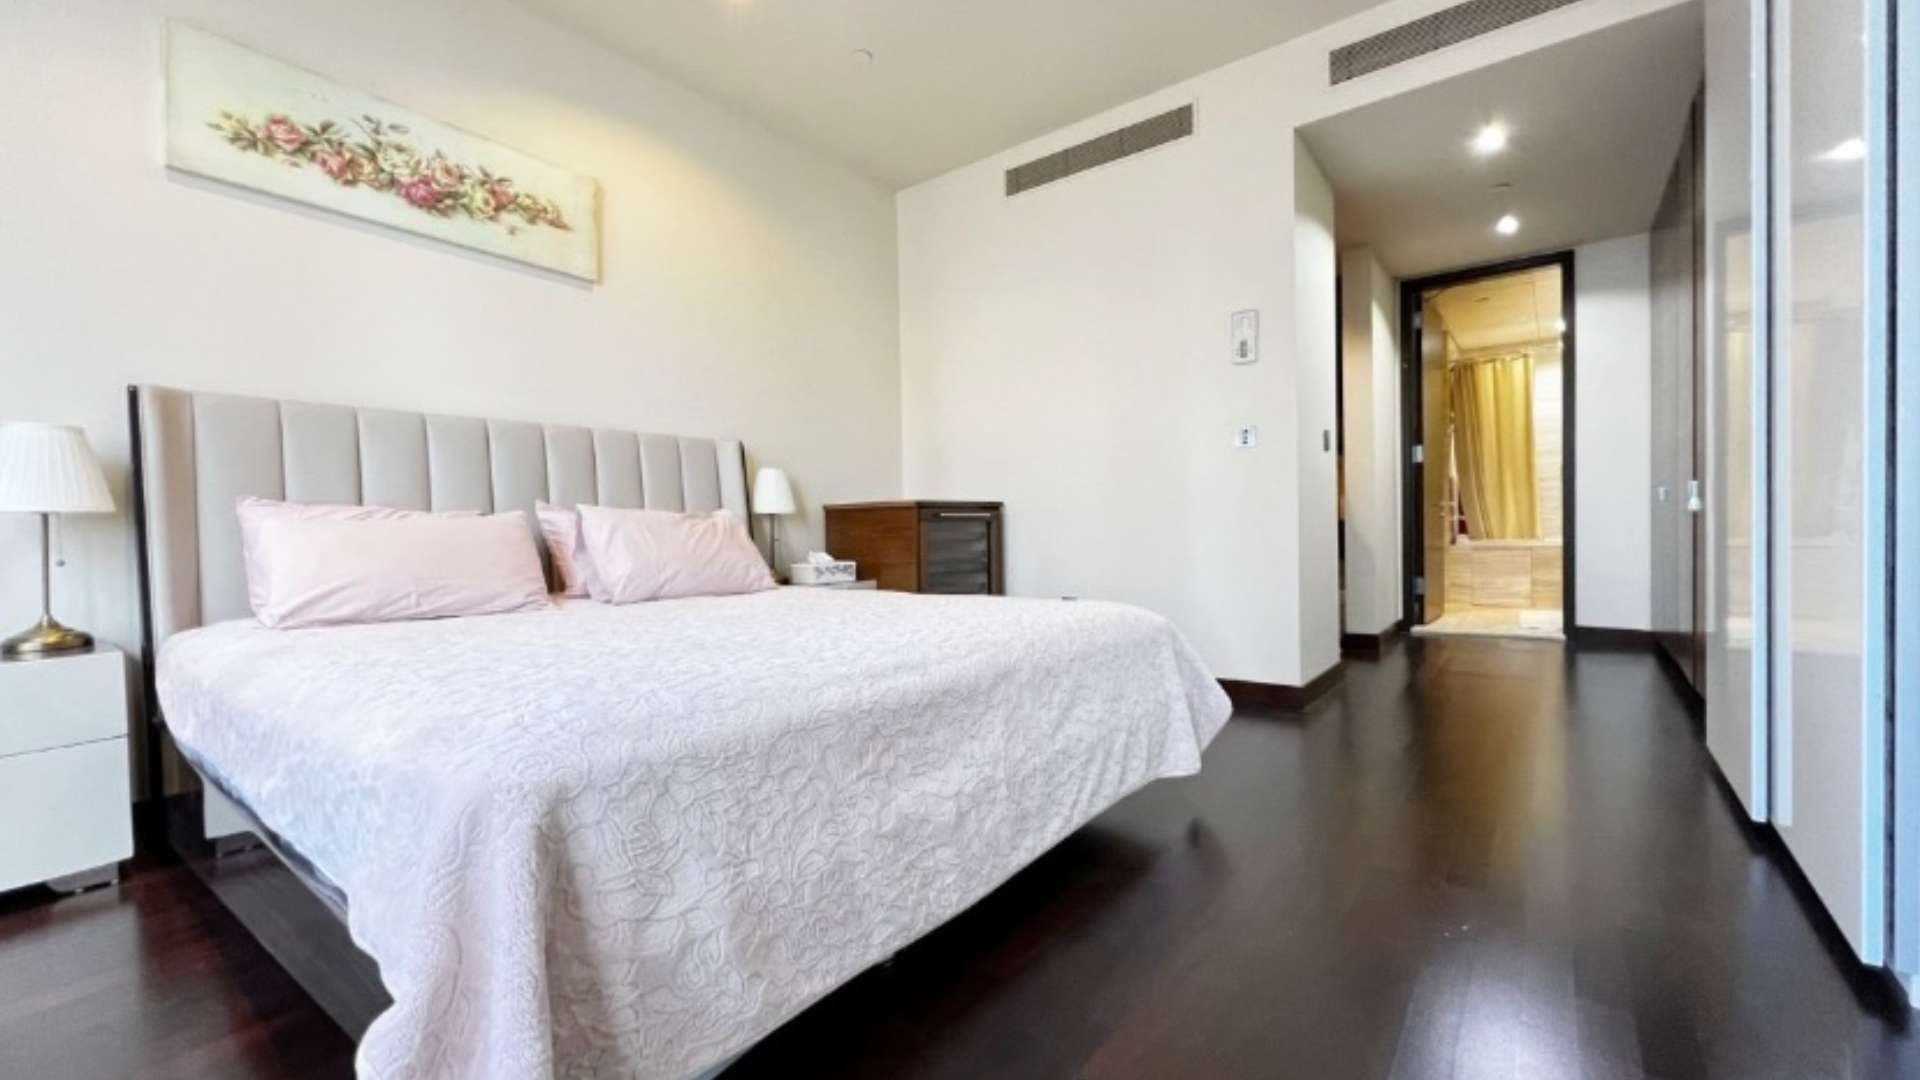 1 Bedroom Apartment For Rent Burj Khalifa Area Lp11980 1d0add367d9a9b00.jpg